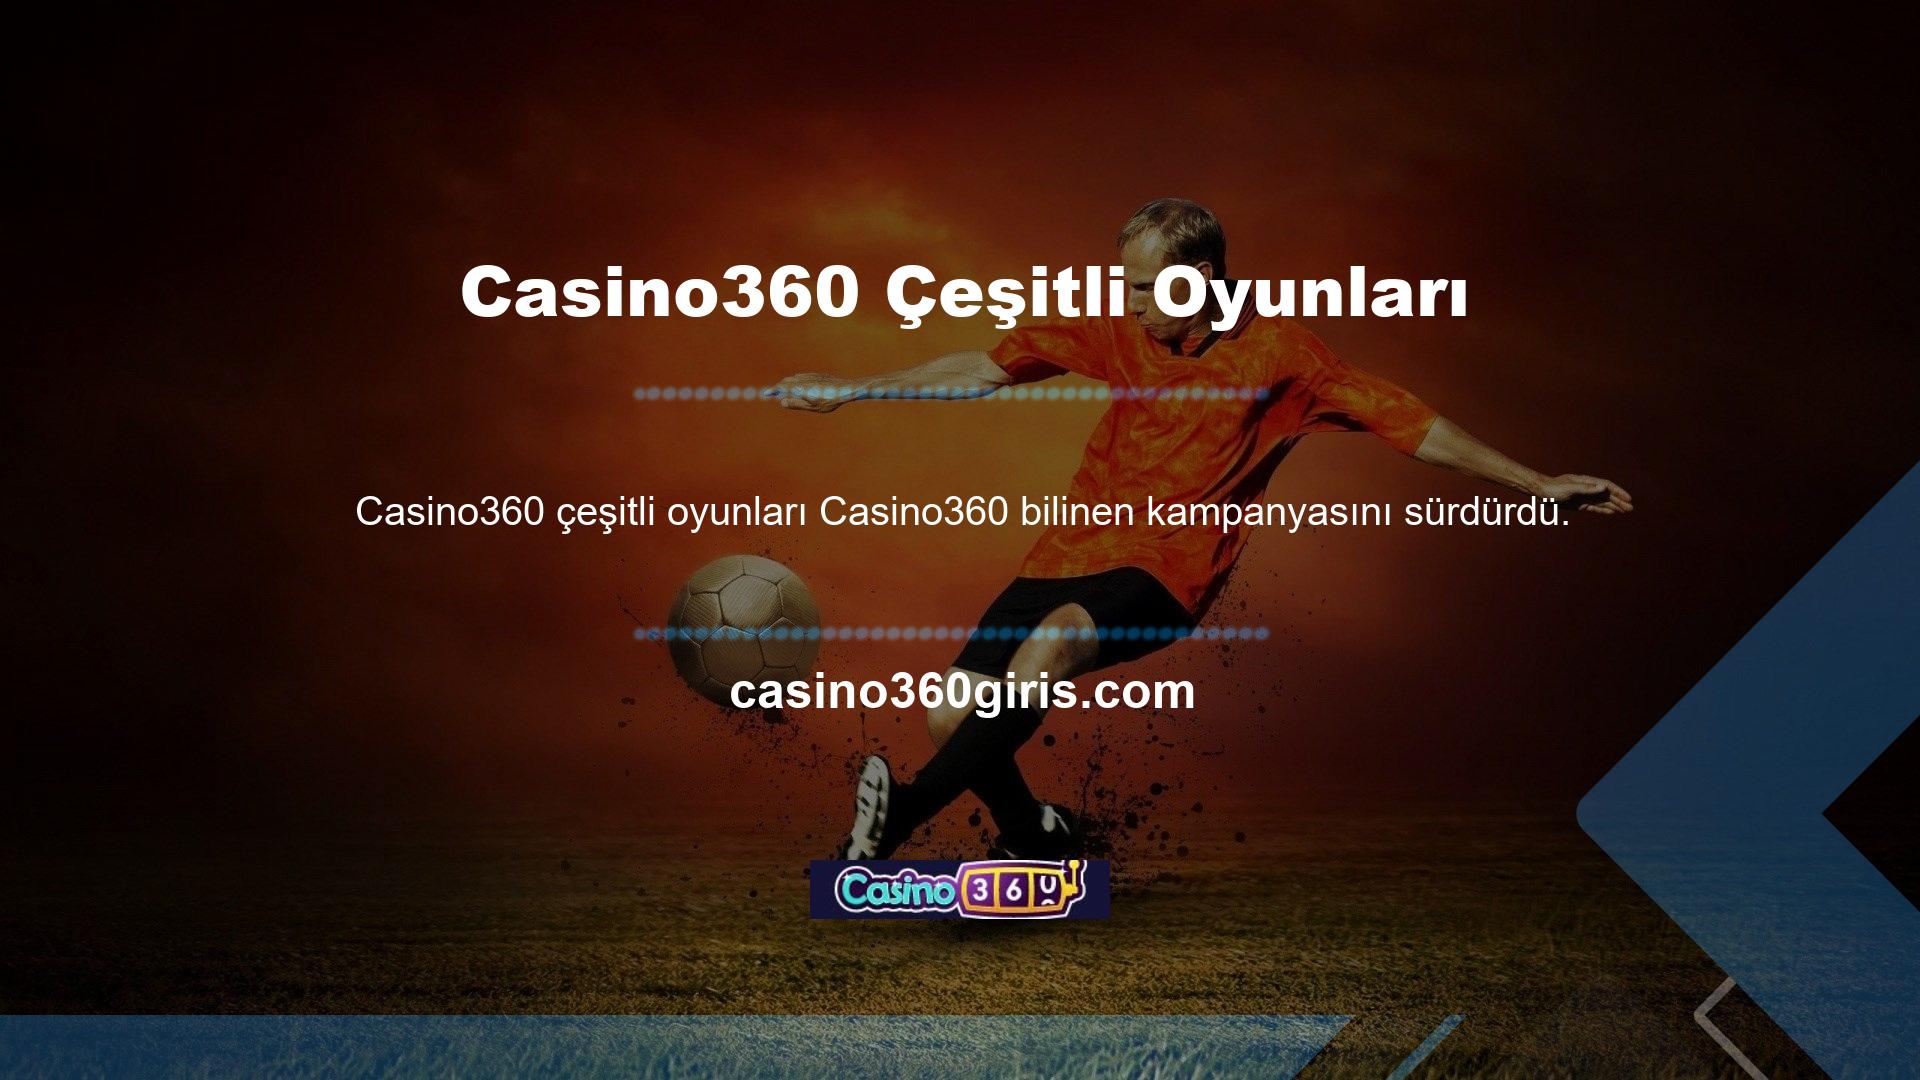 Casino360 bu konuyu görüşmek üzere oyuncuya çeşitli şekillerde ulaştı